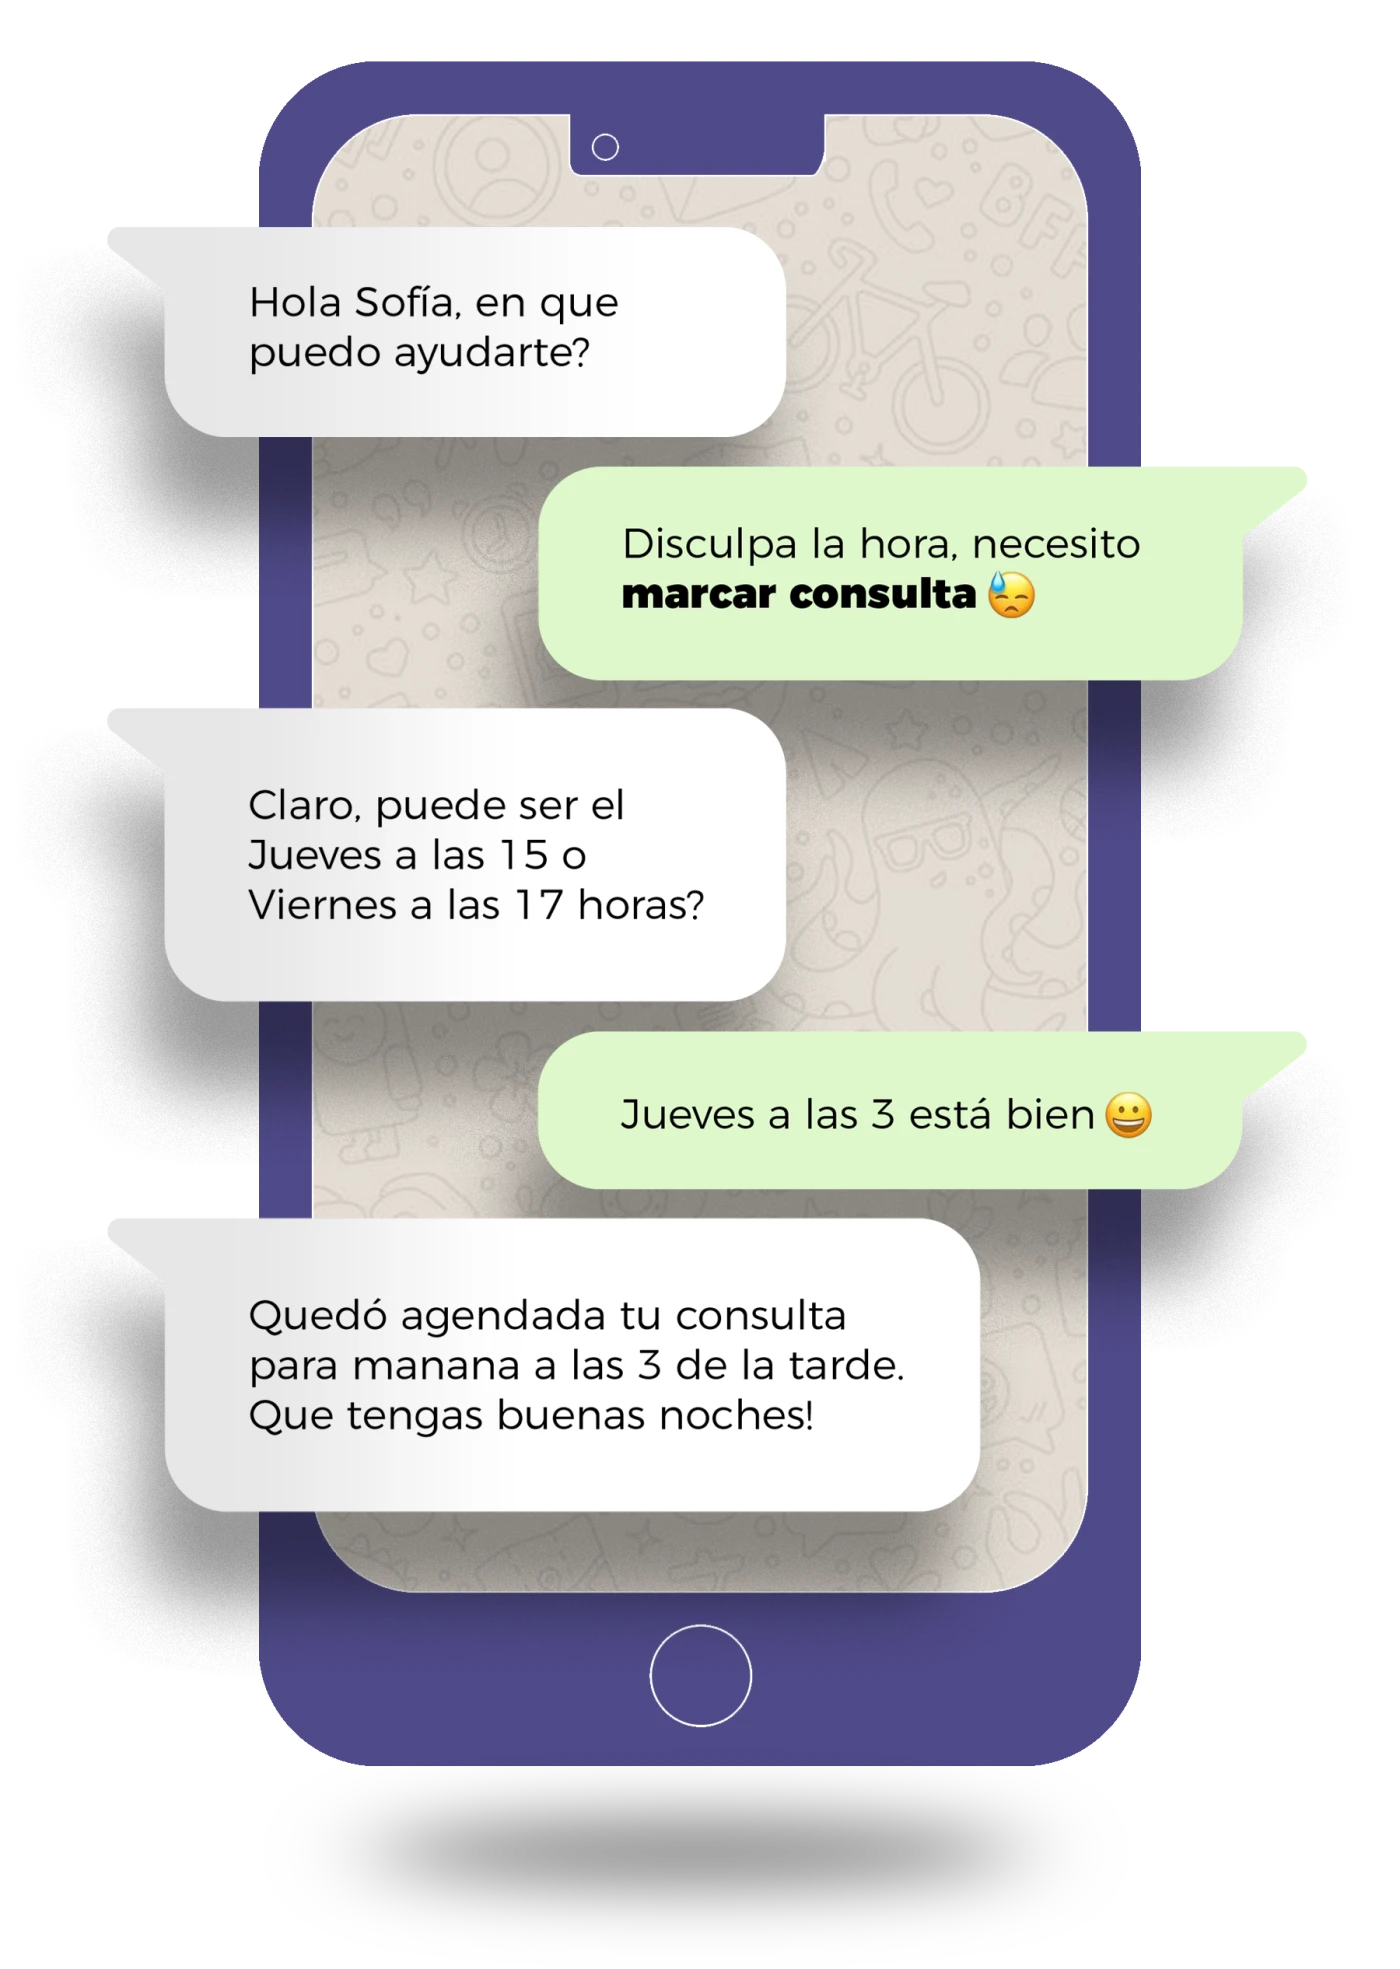 Interfaz de chat de WhatsApp mostrando recordatorios de citas de Callendar